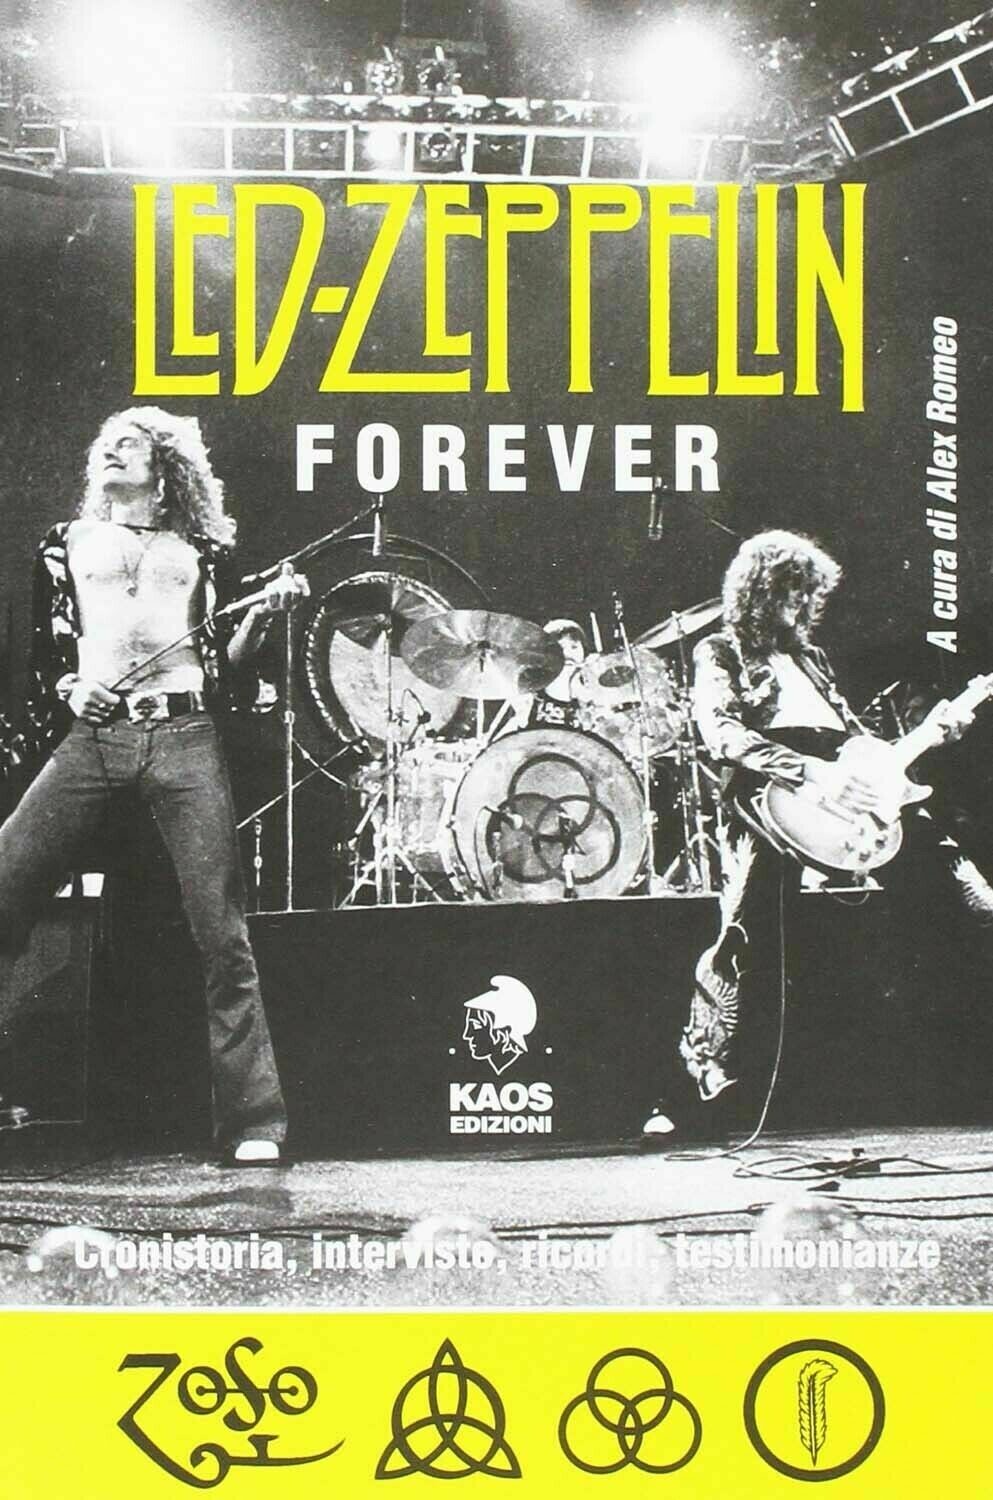 Led Zeppelin - Led Zeppelin Forever (Alex Romeo)